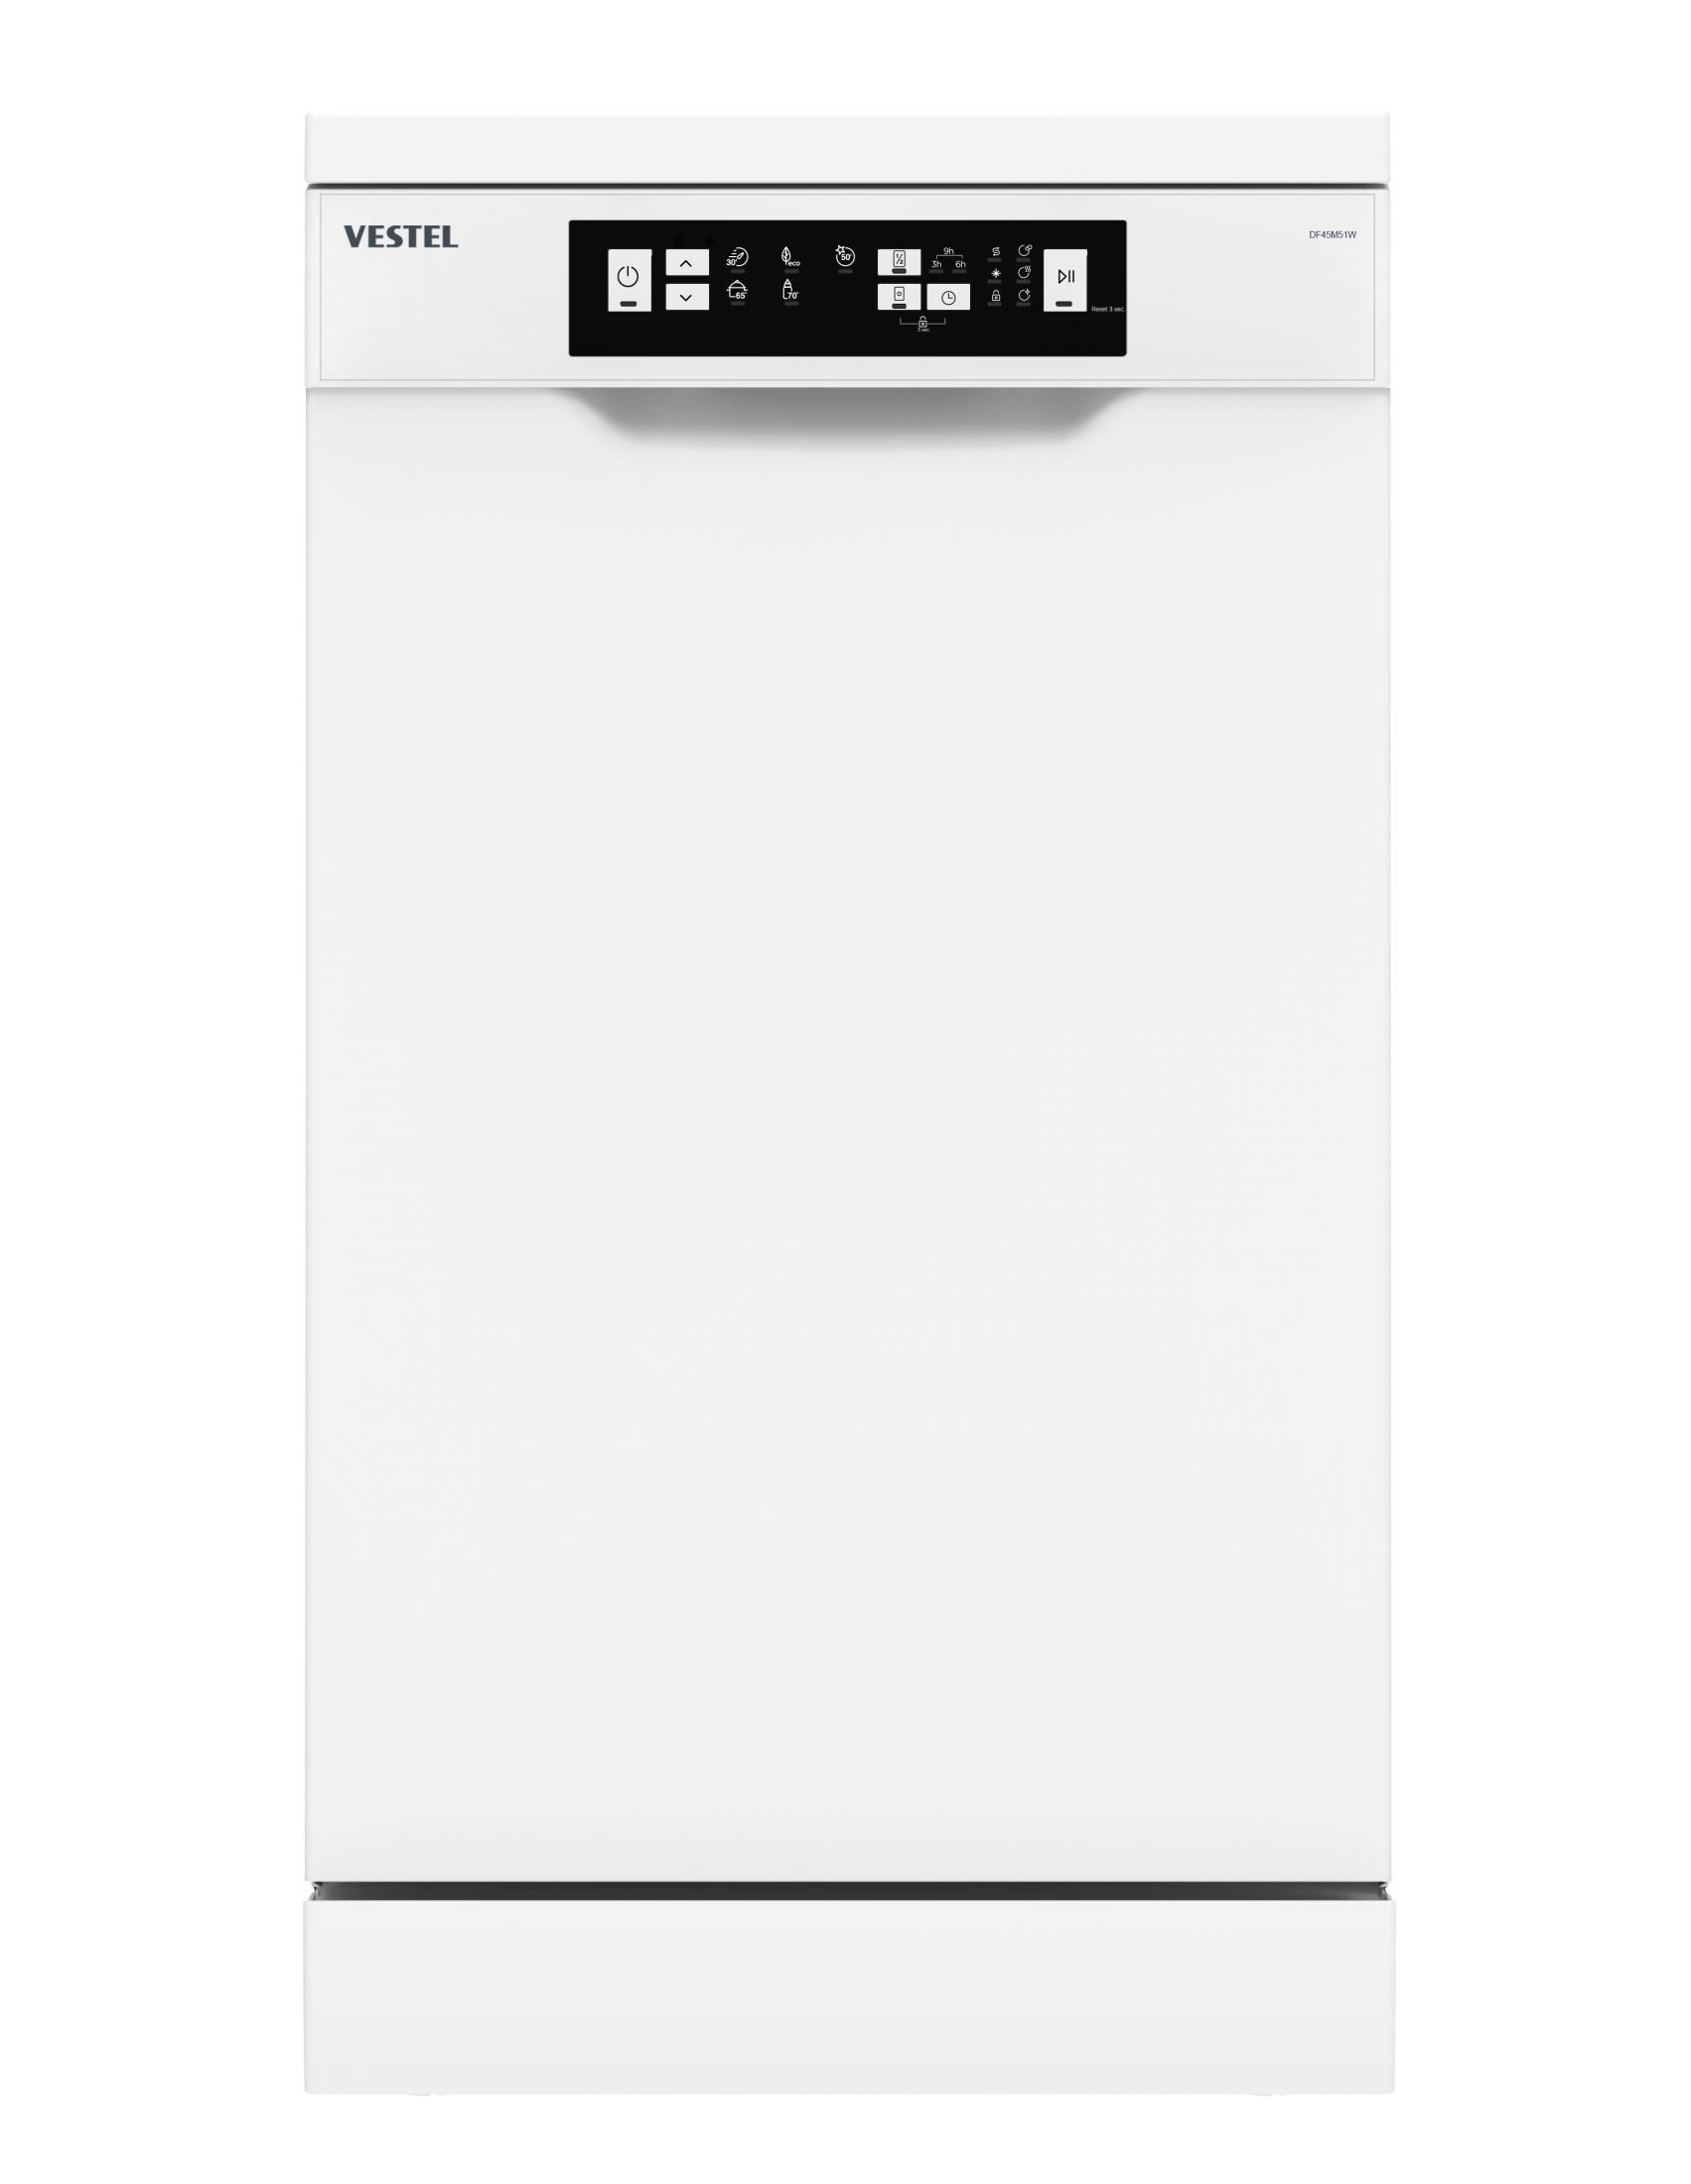 Посудомоечная машина Vestel DF45M51W белый посудомоечная машина vestel df45m41w белый